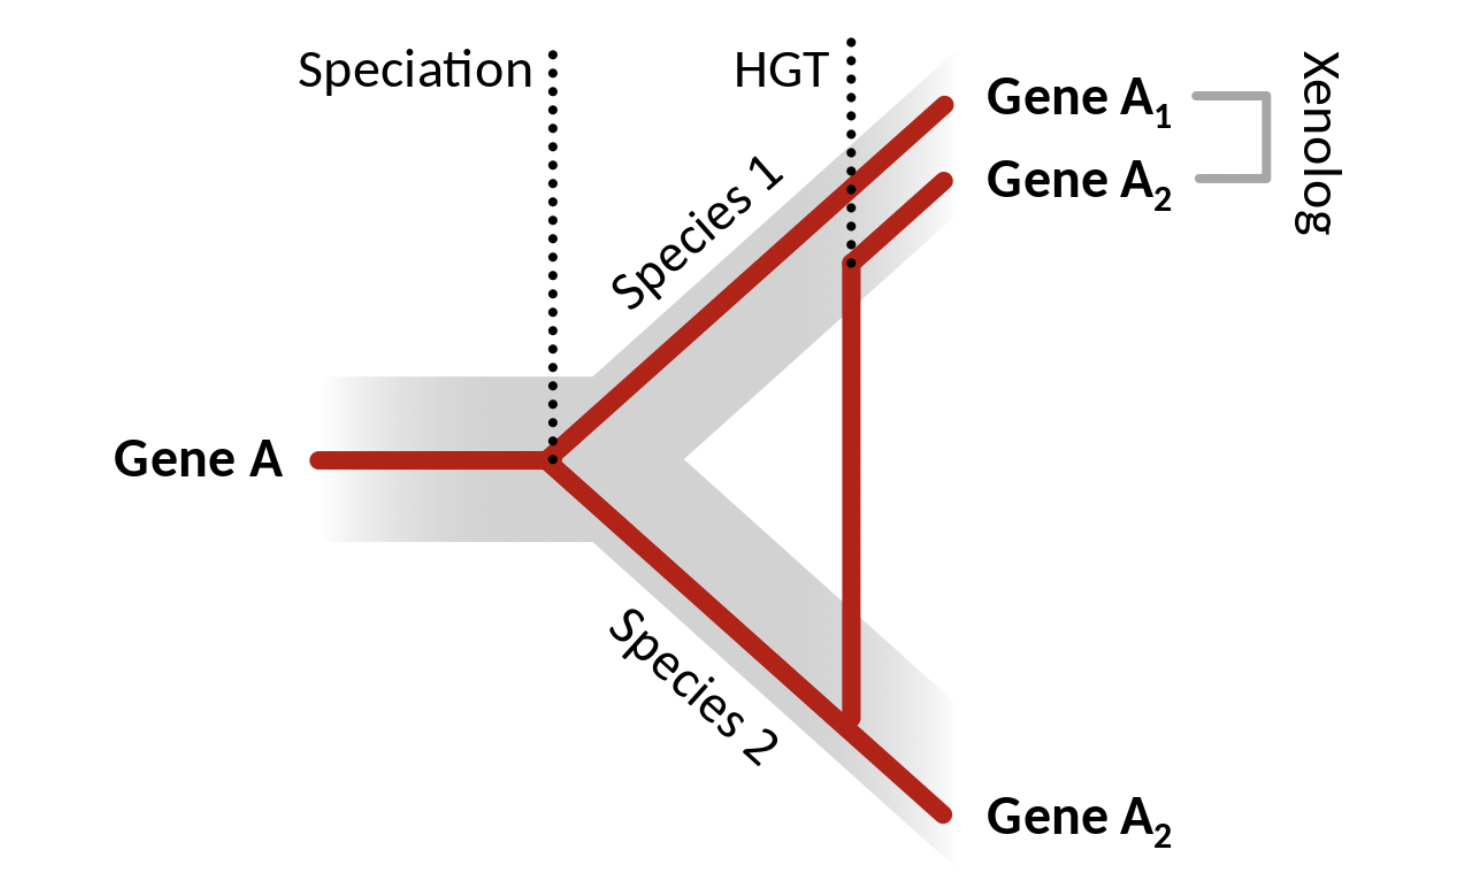 Aparición de una nueva copia de una secuencia proveniente de un homólogo en otra especie a partir de un evento de transferencia horizontal de genes. Los genes \(A_1\) y \(A_2\) son homólogos entre sí en diferentes especies, pero cuando el \(A_2\) se transfiere de la especie 2 a la especie 1, entonces en la especie 1 hay ahora dos copias, que son xenólogas entre sí. Figura de Wikipedia, autor: Thomas Shafee (CC BY 4.0).